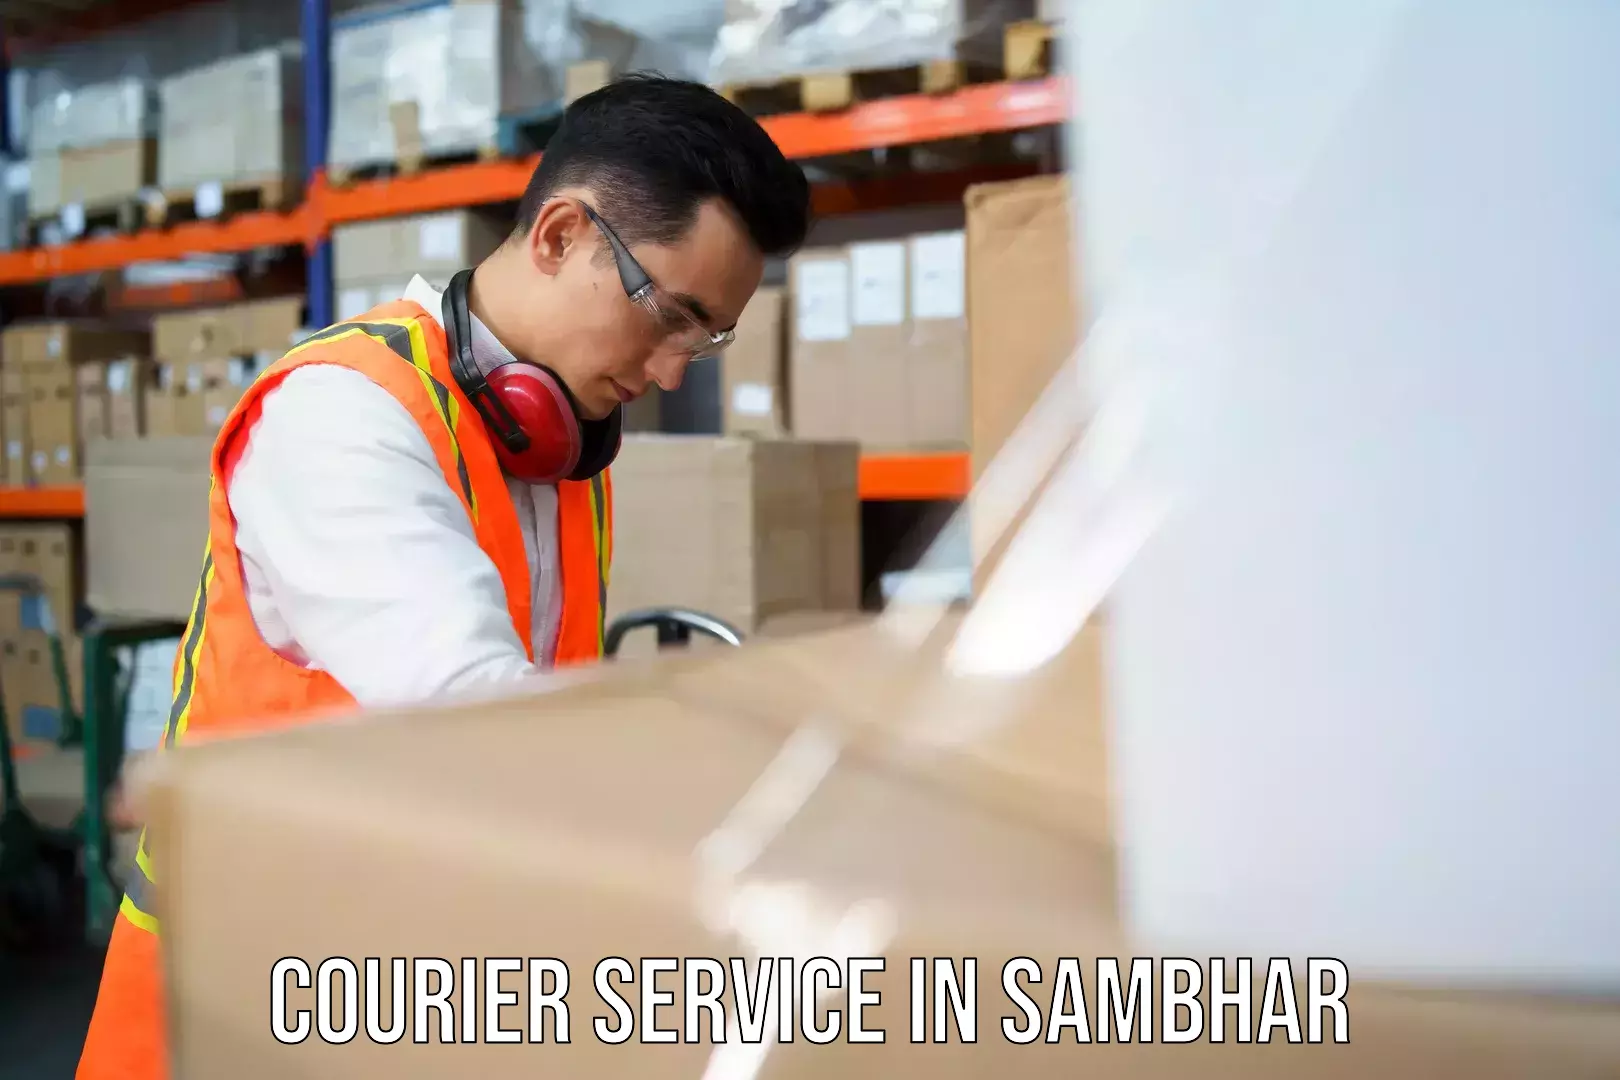 Courier service comparison in Sambhar